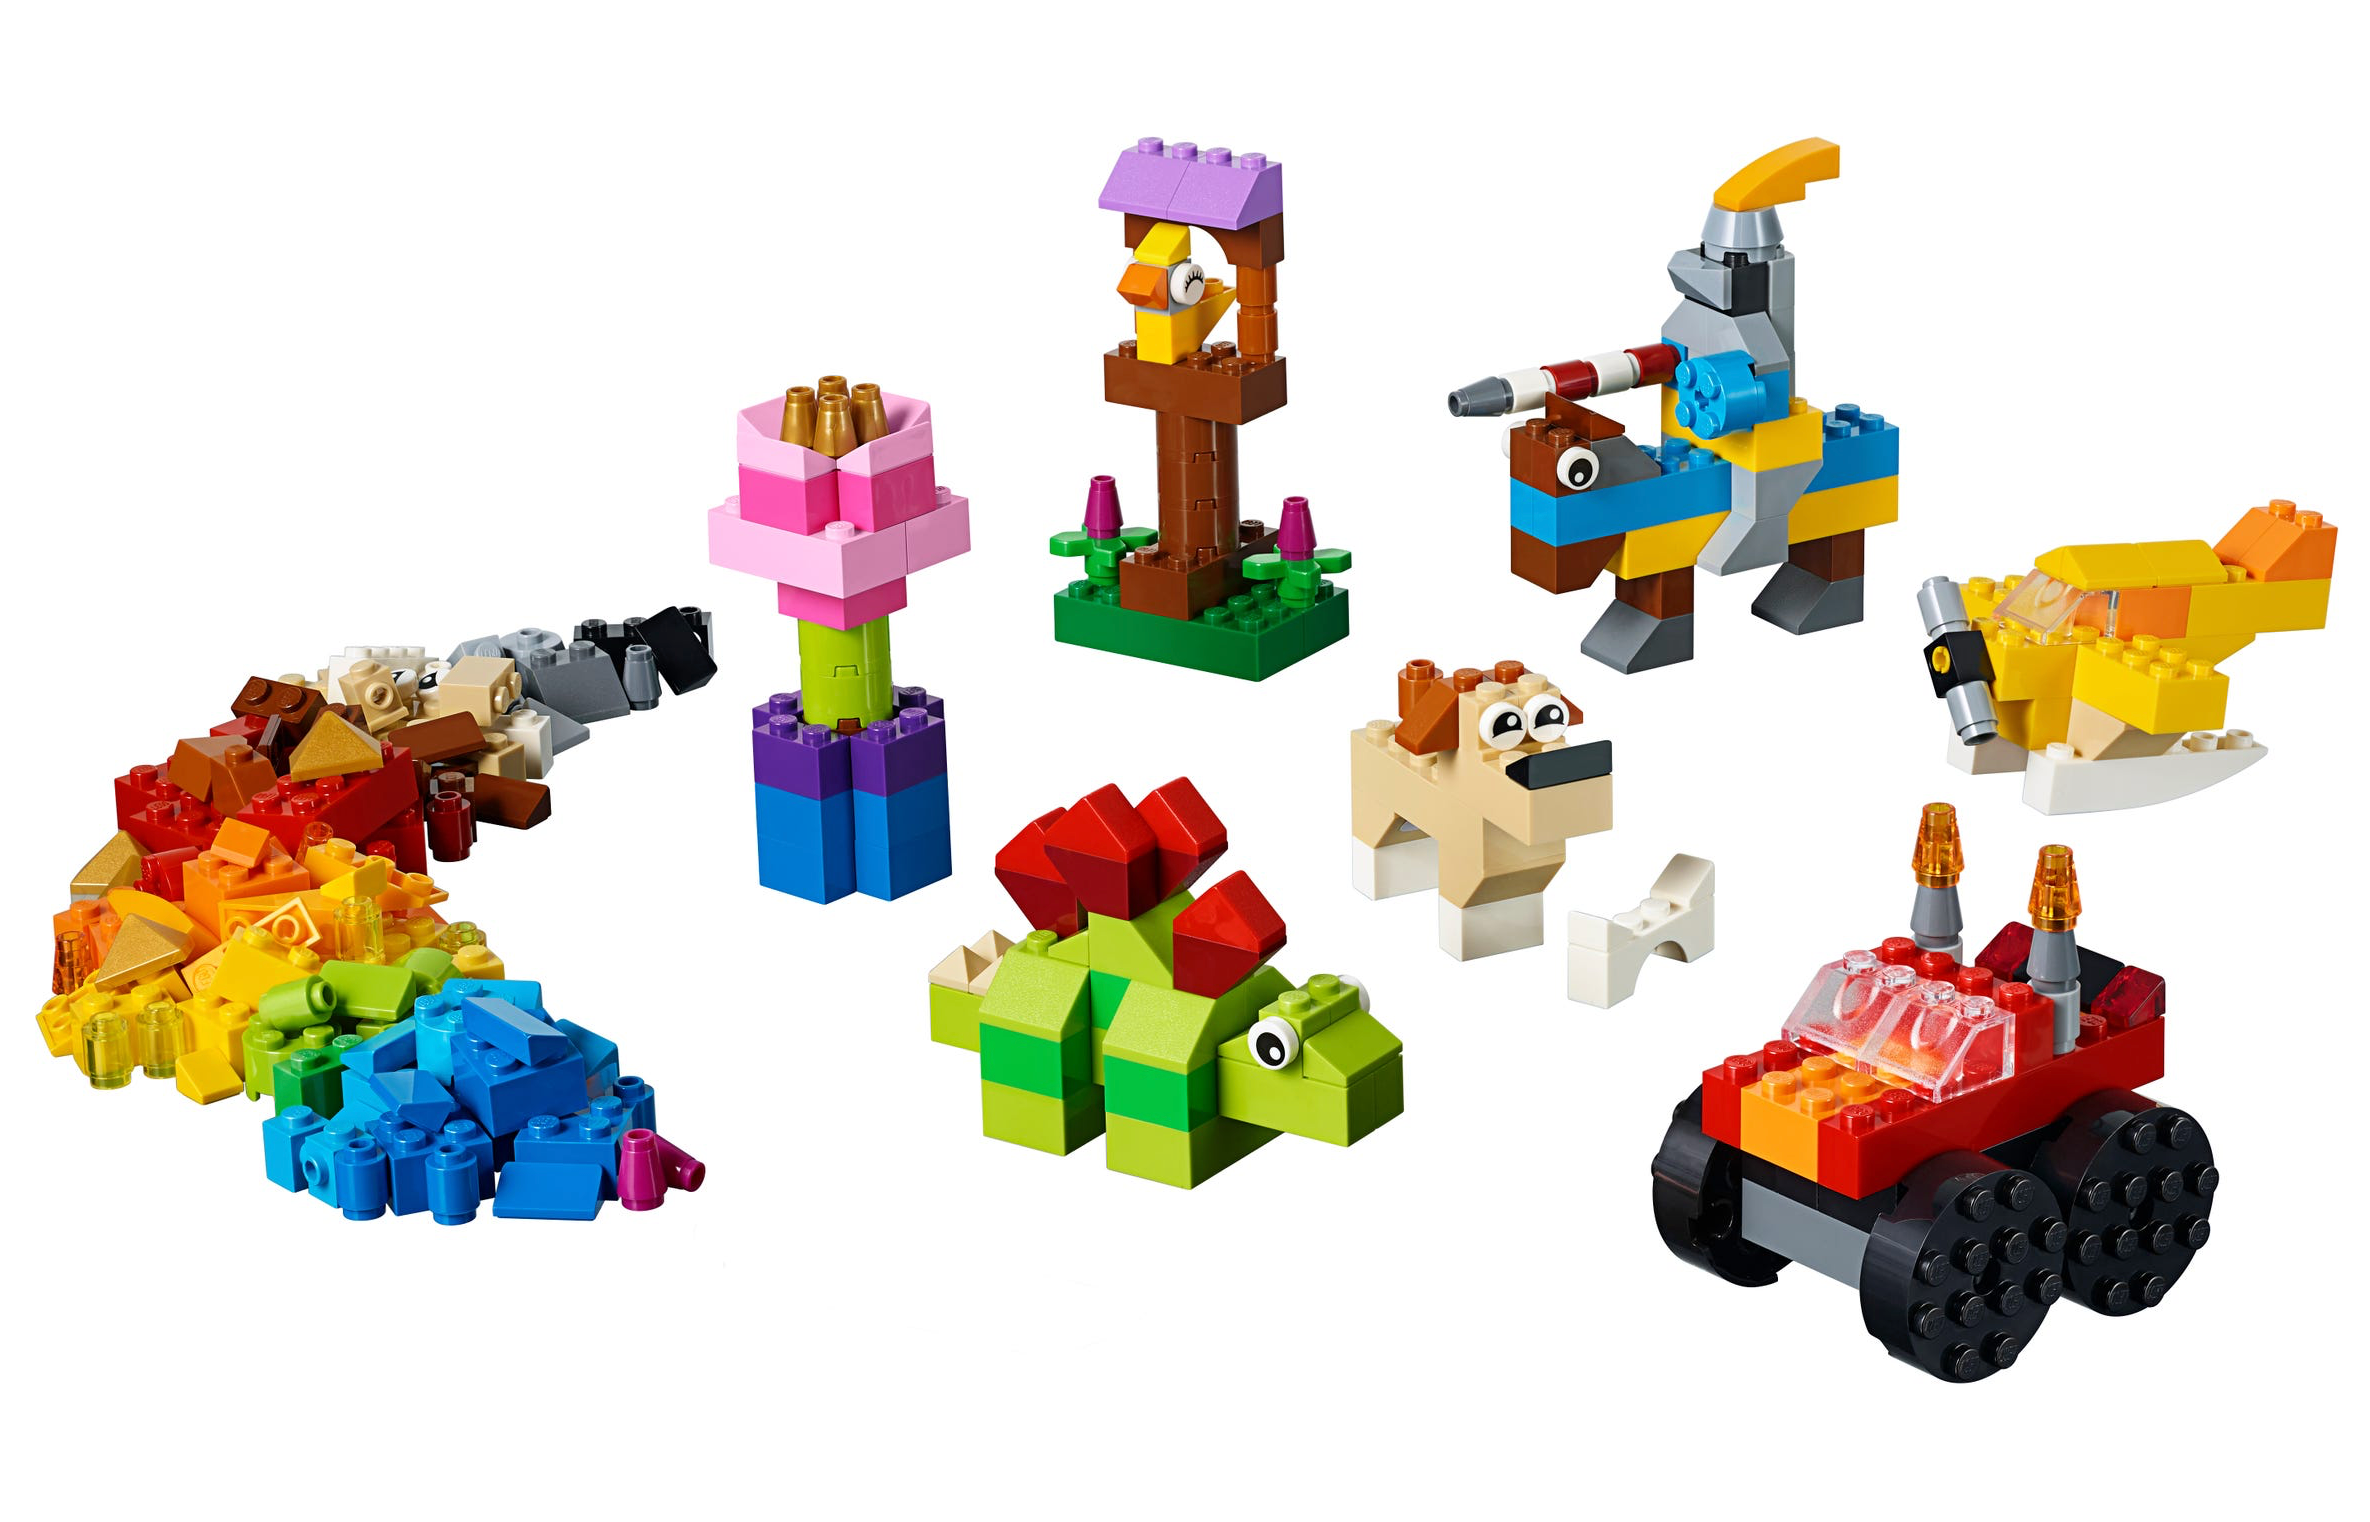 LEGO: Classic - Basic Brick Set